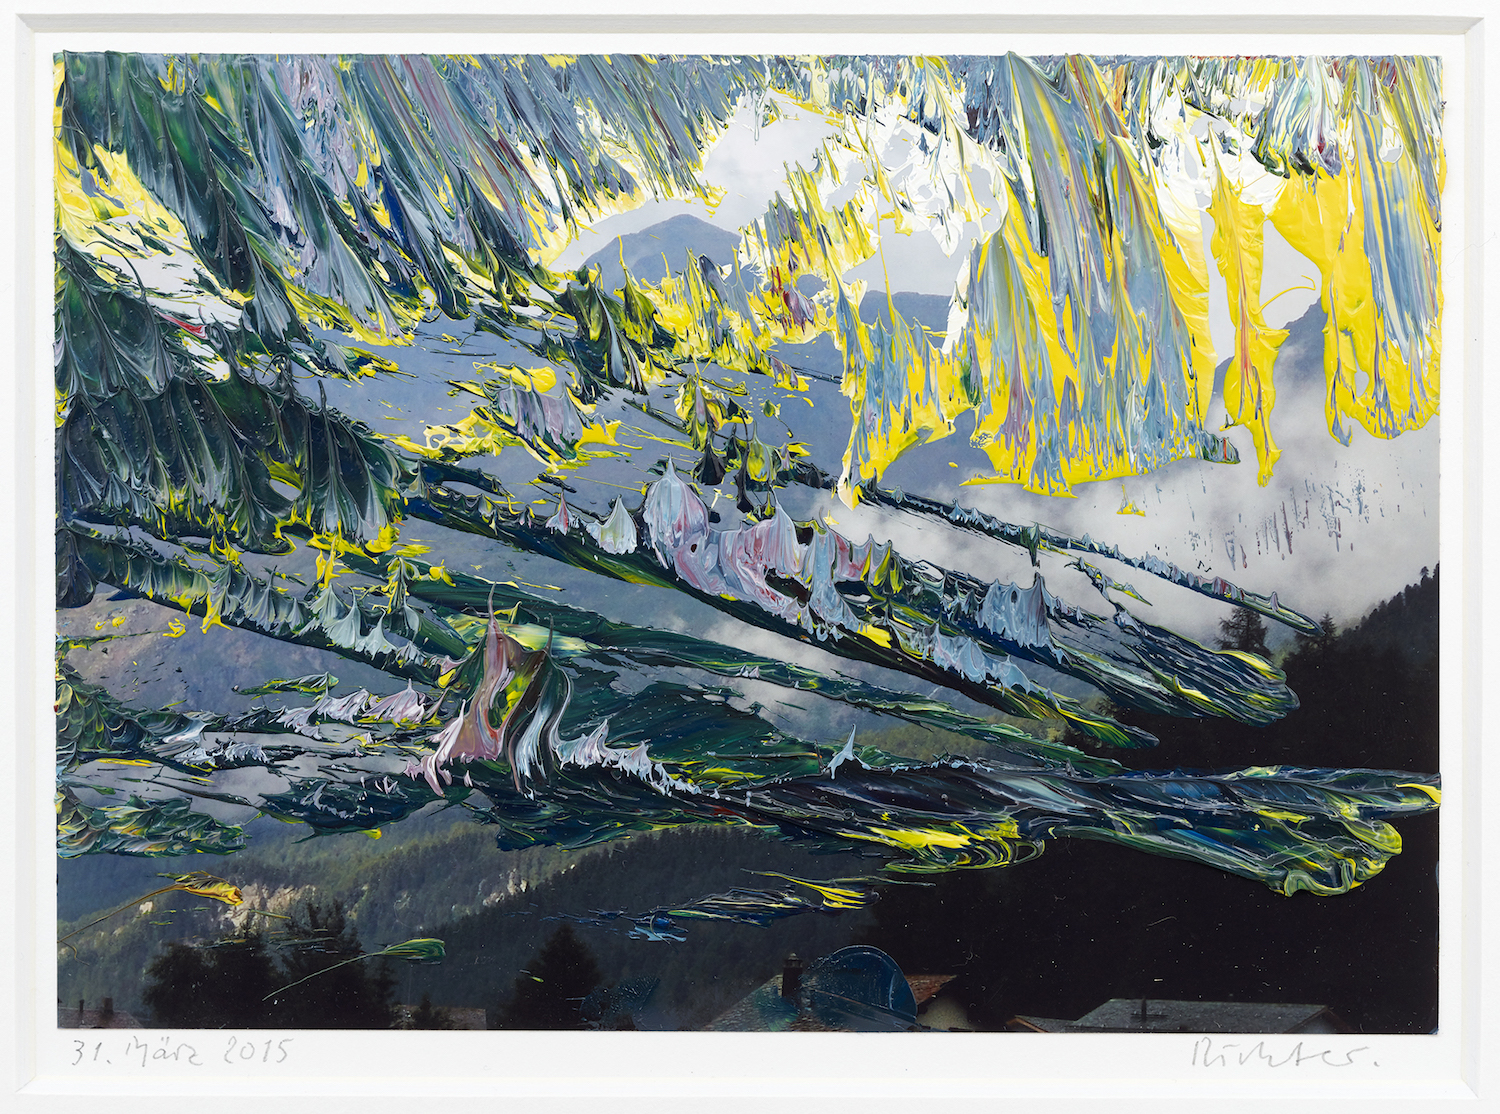 Image: Gerhard Richter, 31. März 2015, 2015. 